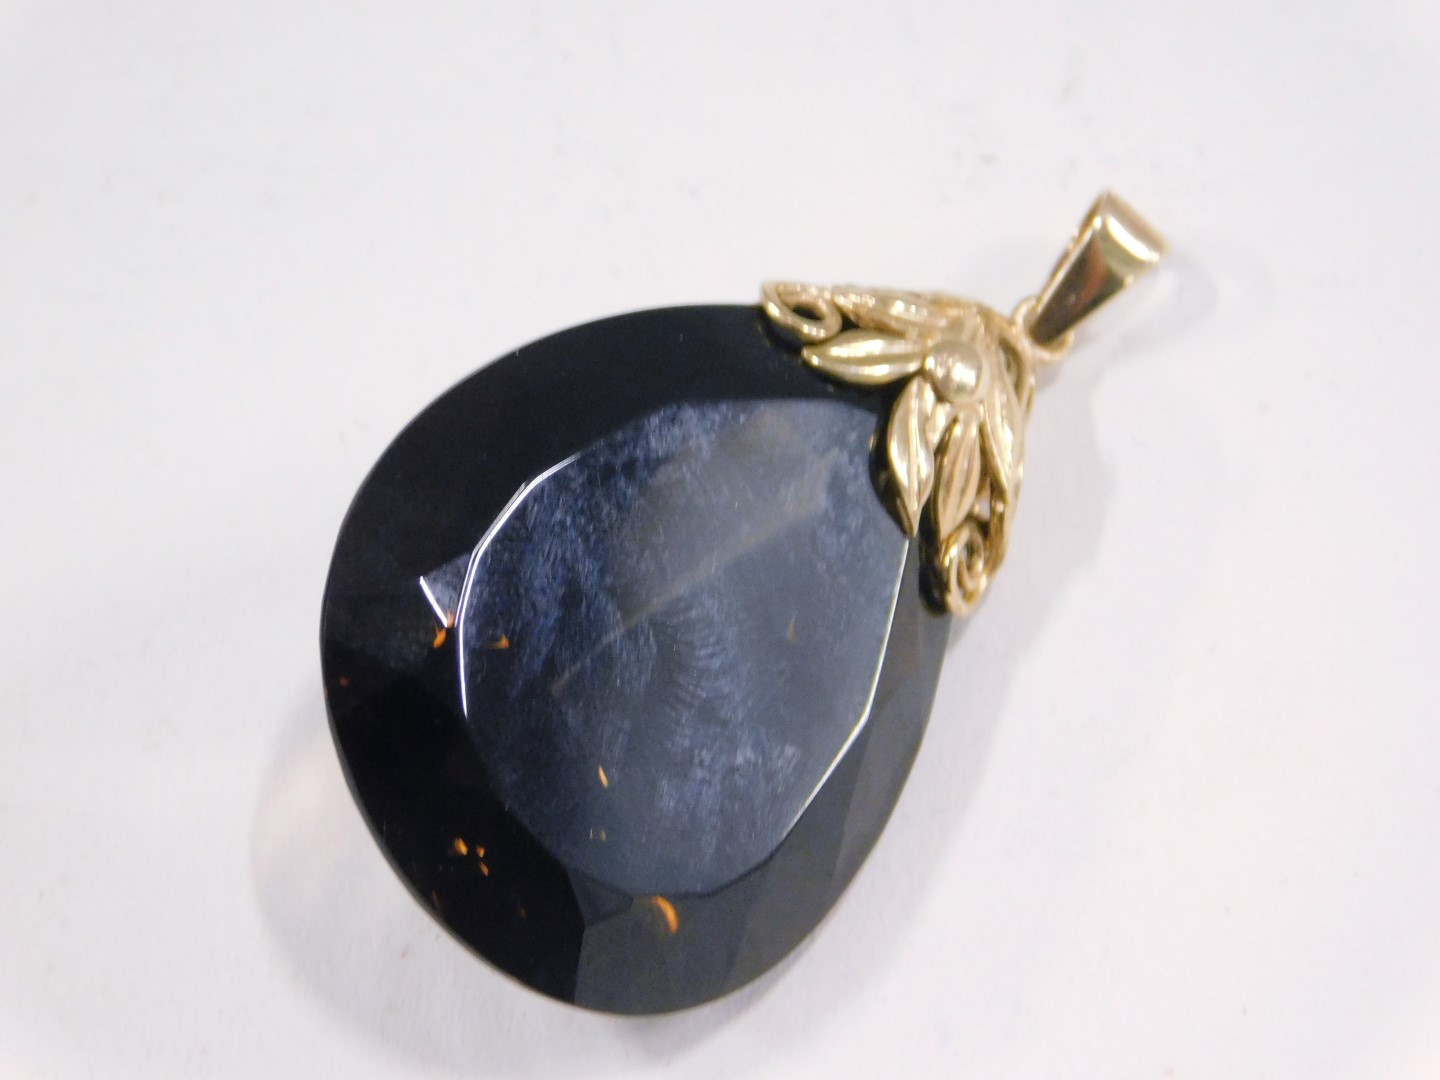 A smokey quartz pendant, the tear drop cut smokey quartz, 4cm high x 2.5cm wide, with a 9ct gold flo - Image 2 of 3